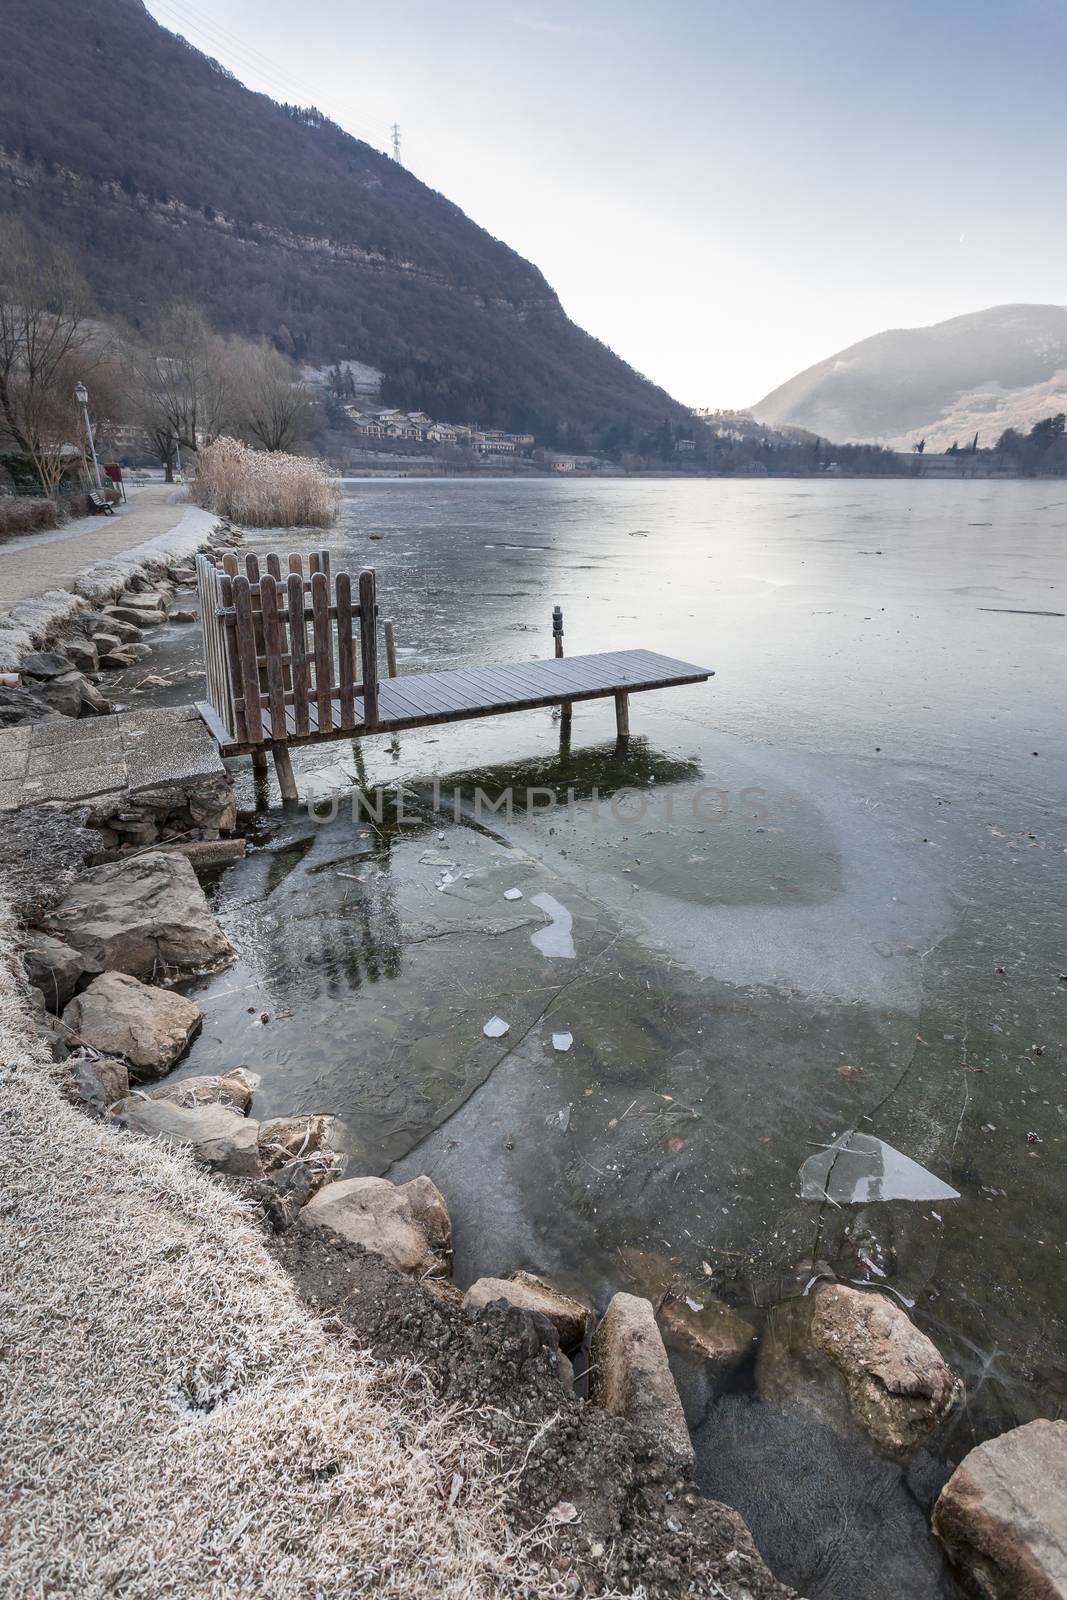 Endine lake completely frozen. Endine Gaiano (BG) ITALY - January 22, 2019.